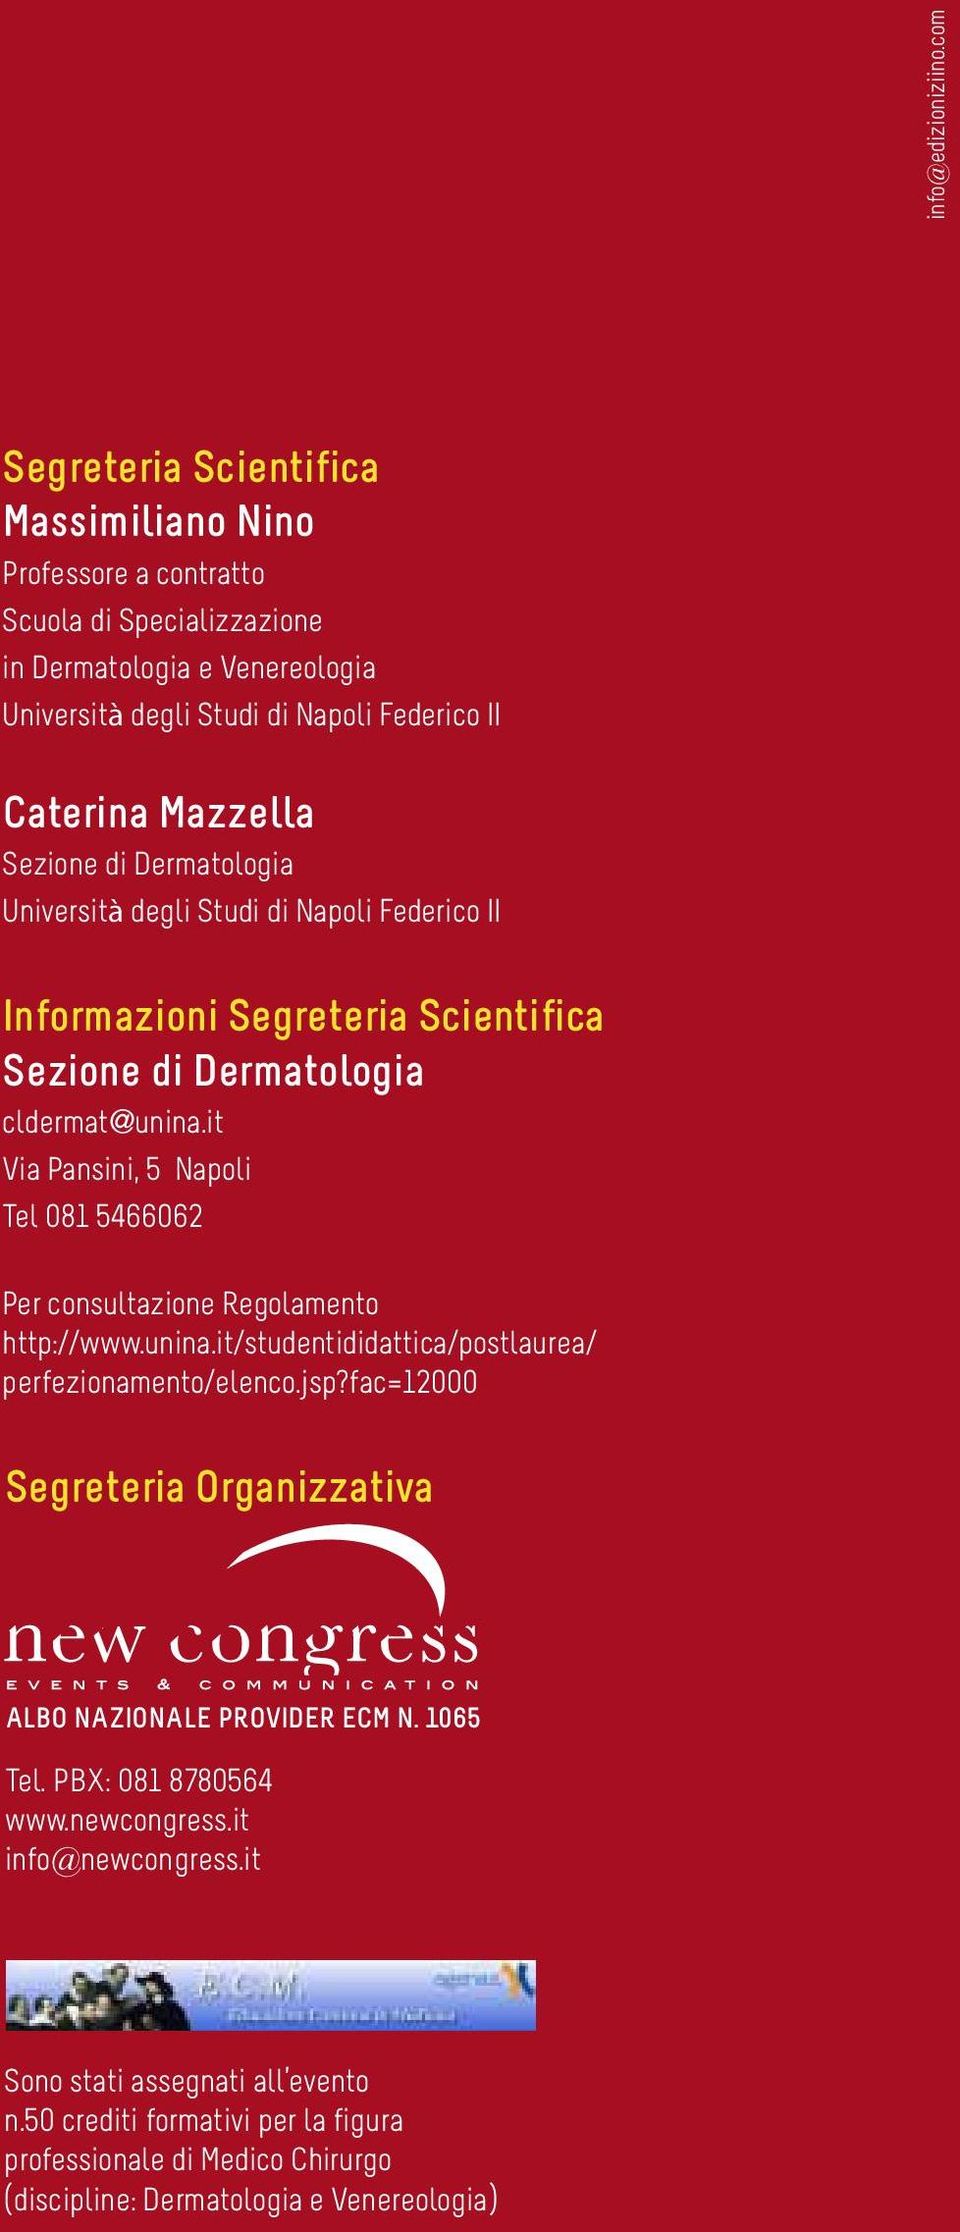 Sezione di Dermatologia Università degli Studi di Napoli Federico II Informazioni Segreteria Scientifica Sezione di Dermatologia cldermat@unina.